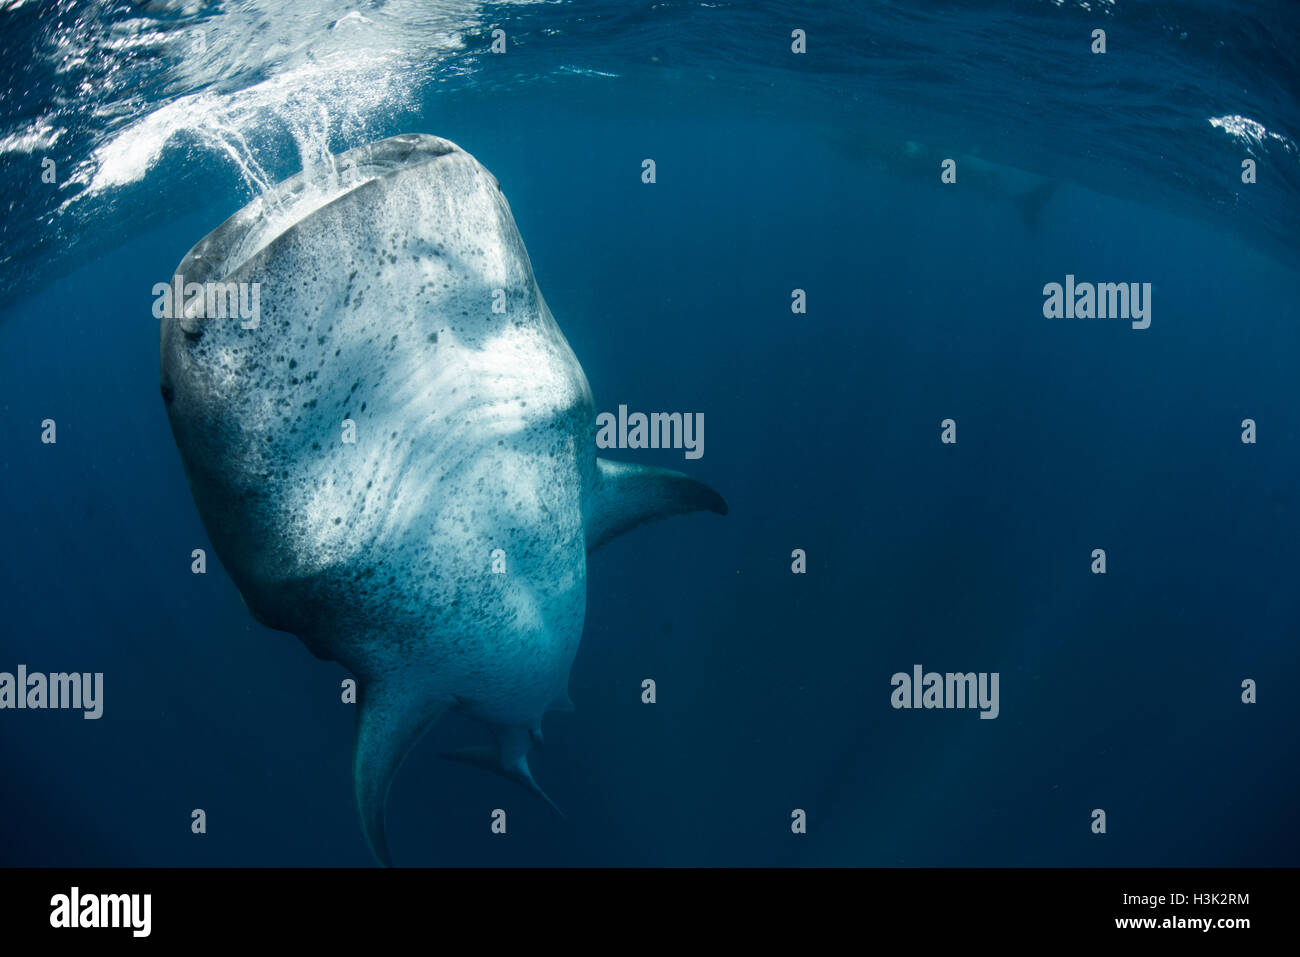 Tiburón ballena (Rhincodon typus) alimentando verticalmente en el agua, Isla Contoy, México Foto de stock